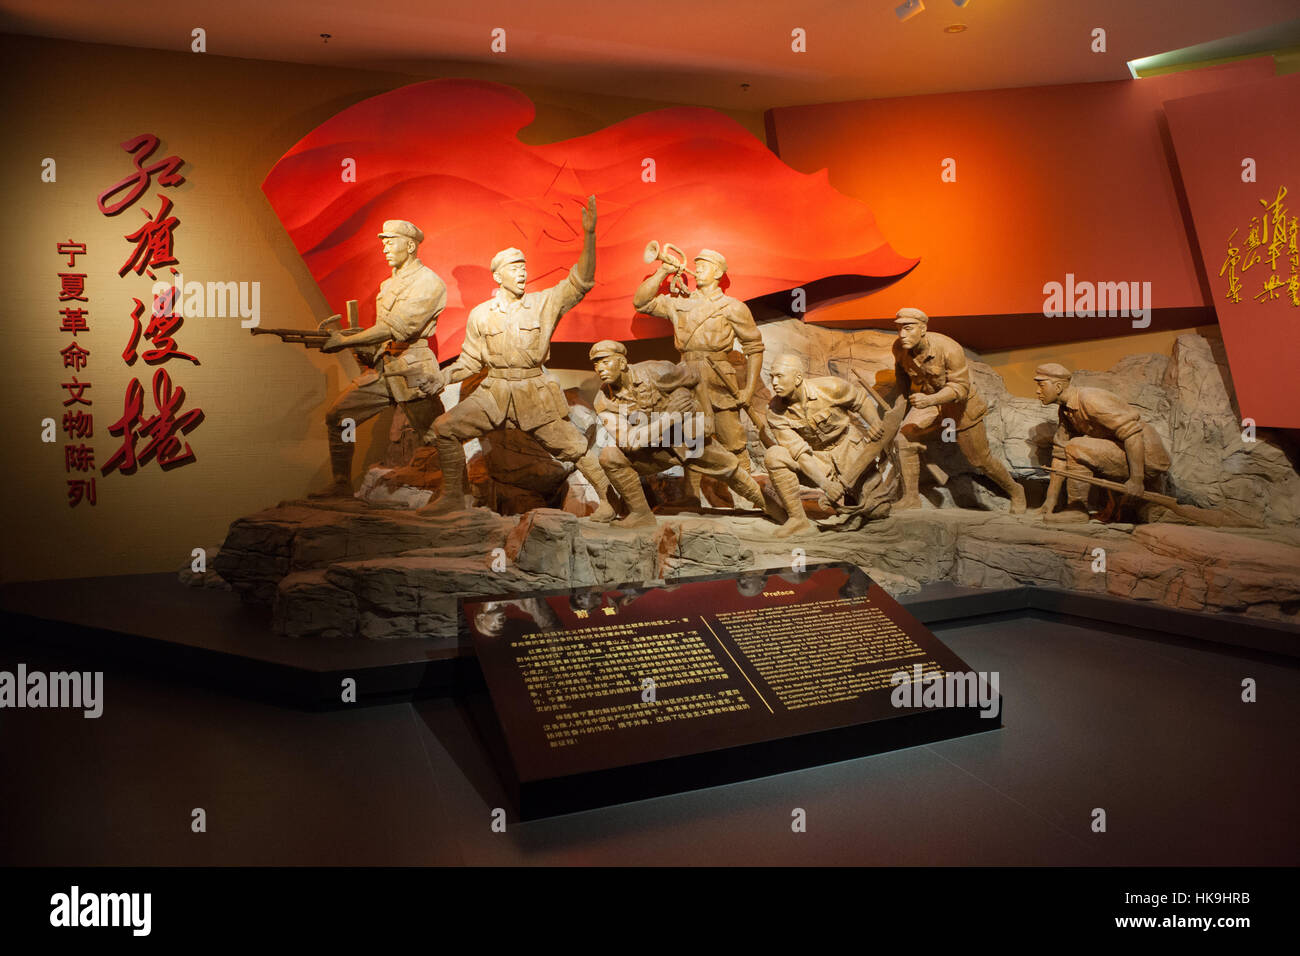 Une sculpture représentant le passage par l'Armée Rouge Ningxia. Ningxia Museum (Musée de la région autonome de Ningxia Hui). Yinchuan, Ningxia, Chine Banque D'Images